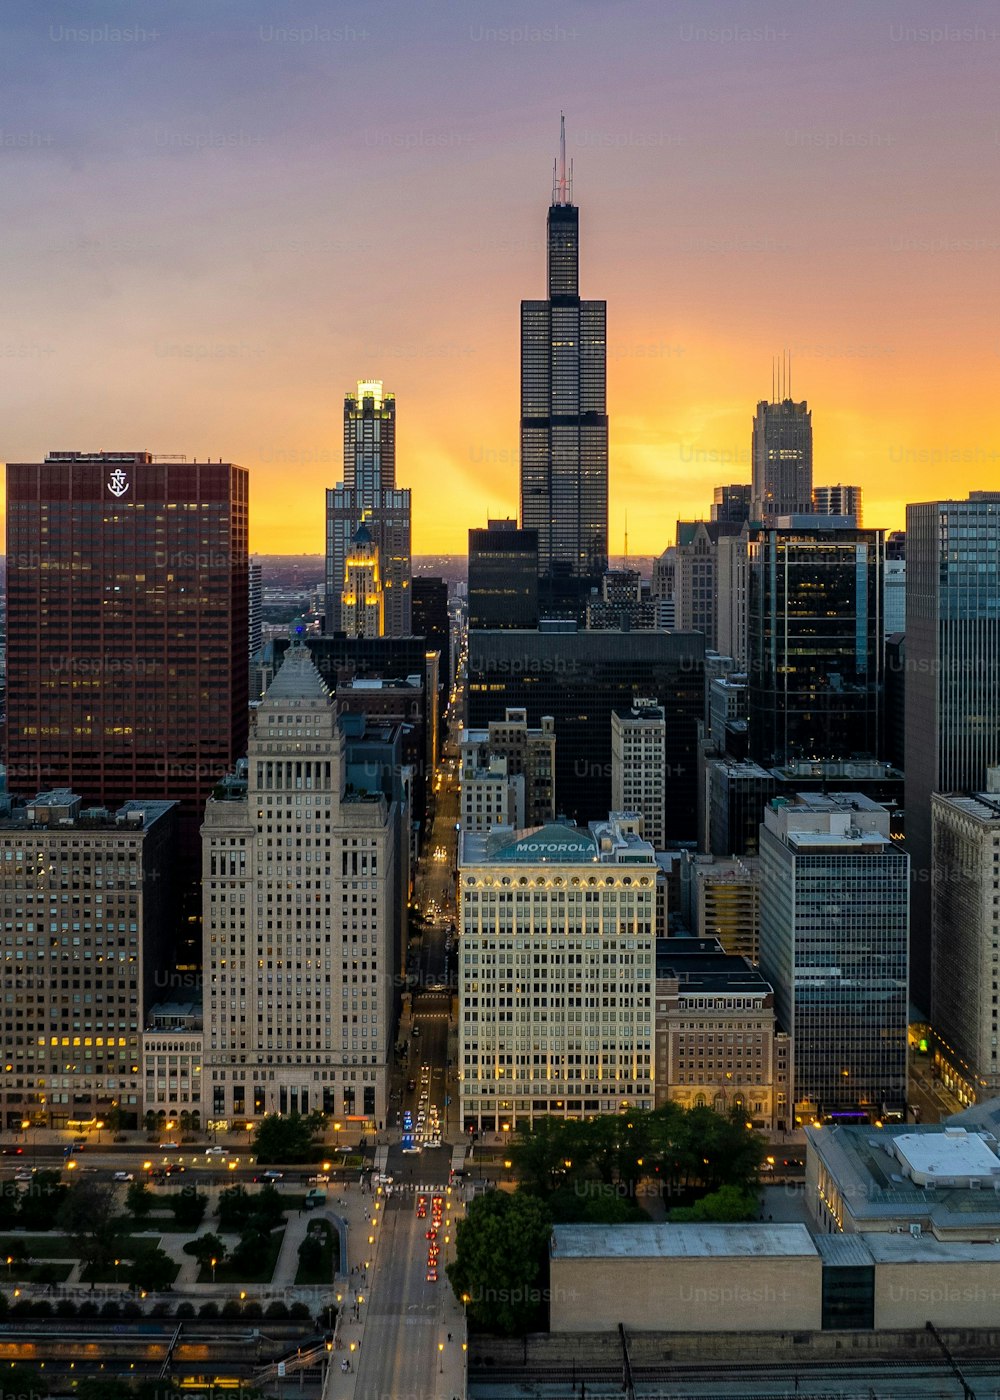 Una veduta aerea del centro di Chicago con alti grattacieli al tramonto sullo sfondo del cielo nuvoloso